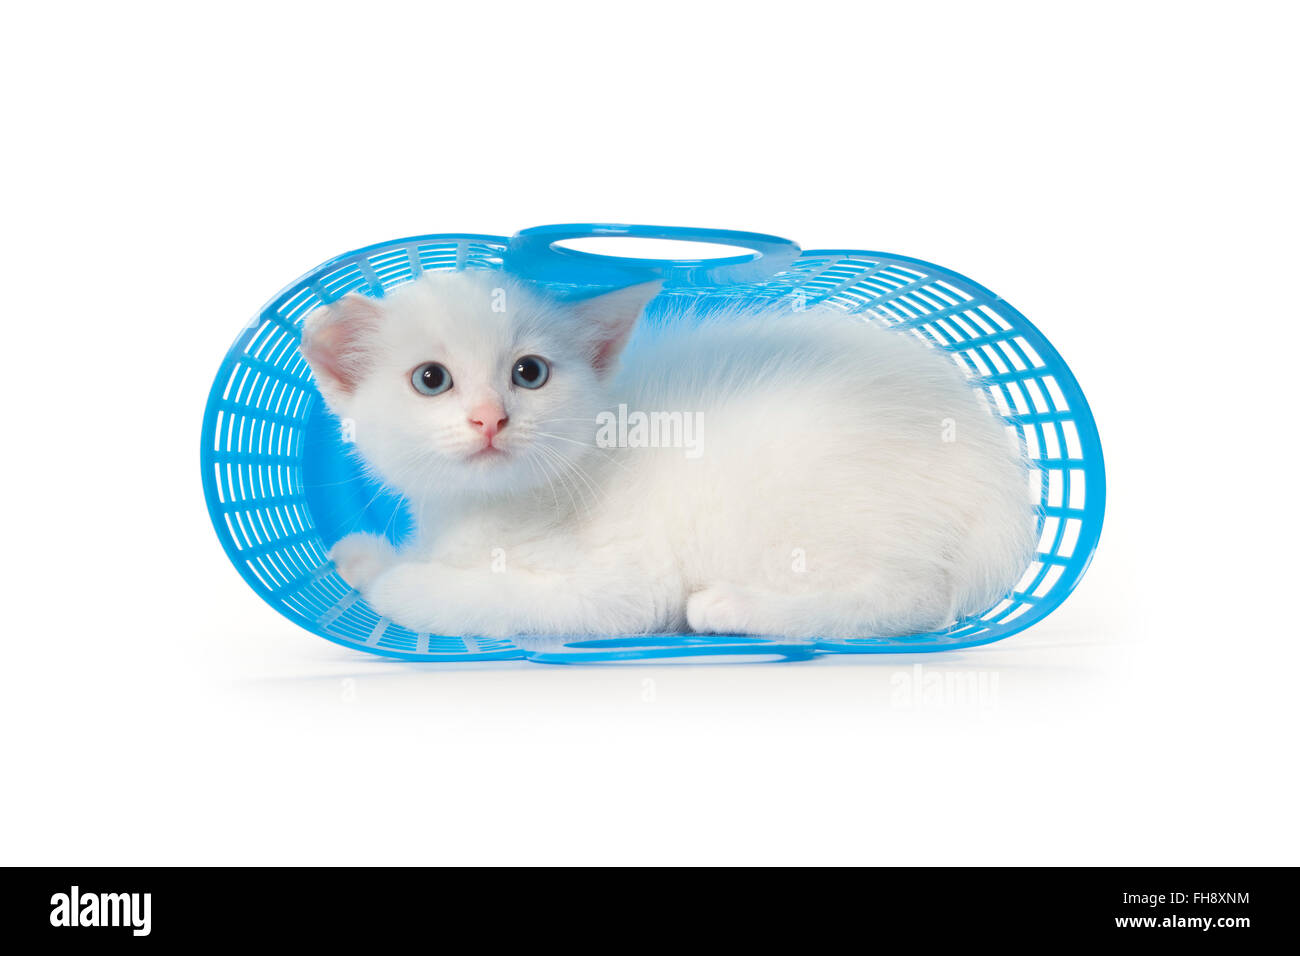 Mignon chaton blanc aux yeux bleus dans un panier en plastique bleu sur fond blanc Banque D'Images